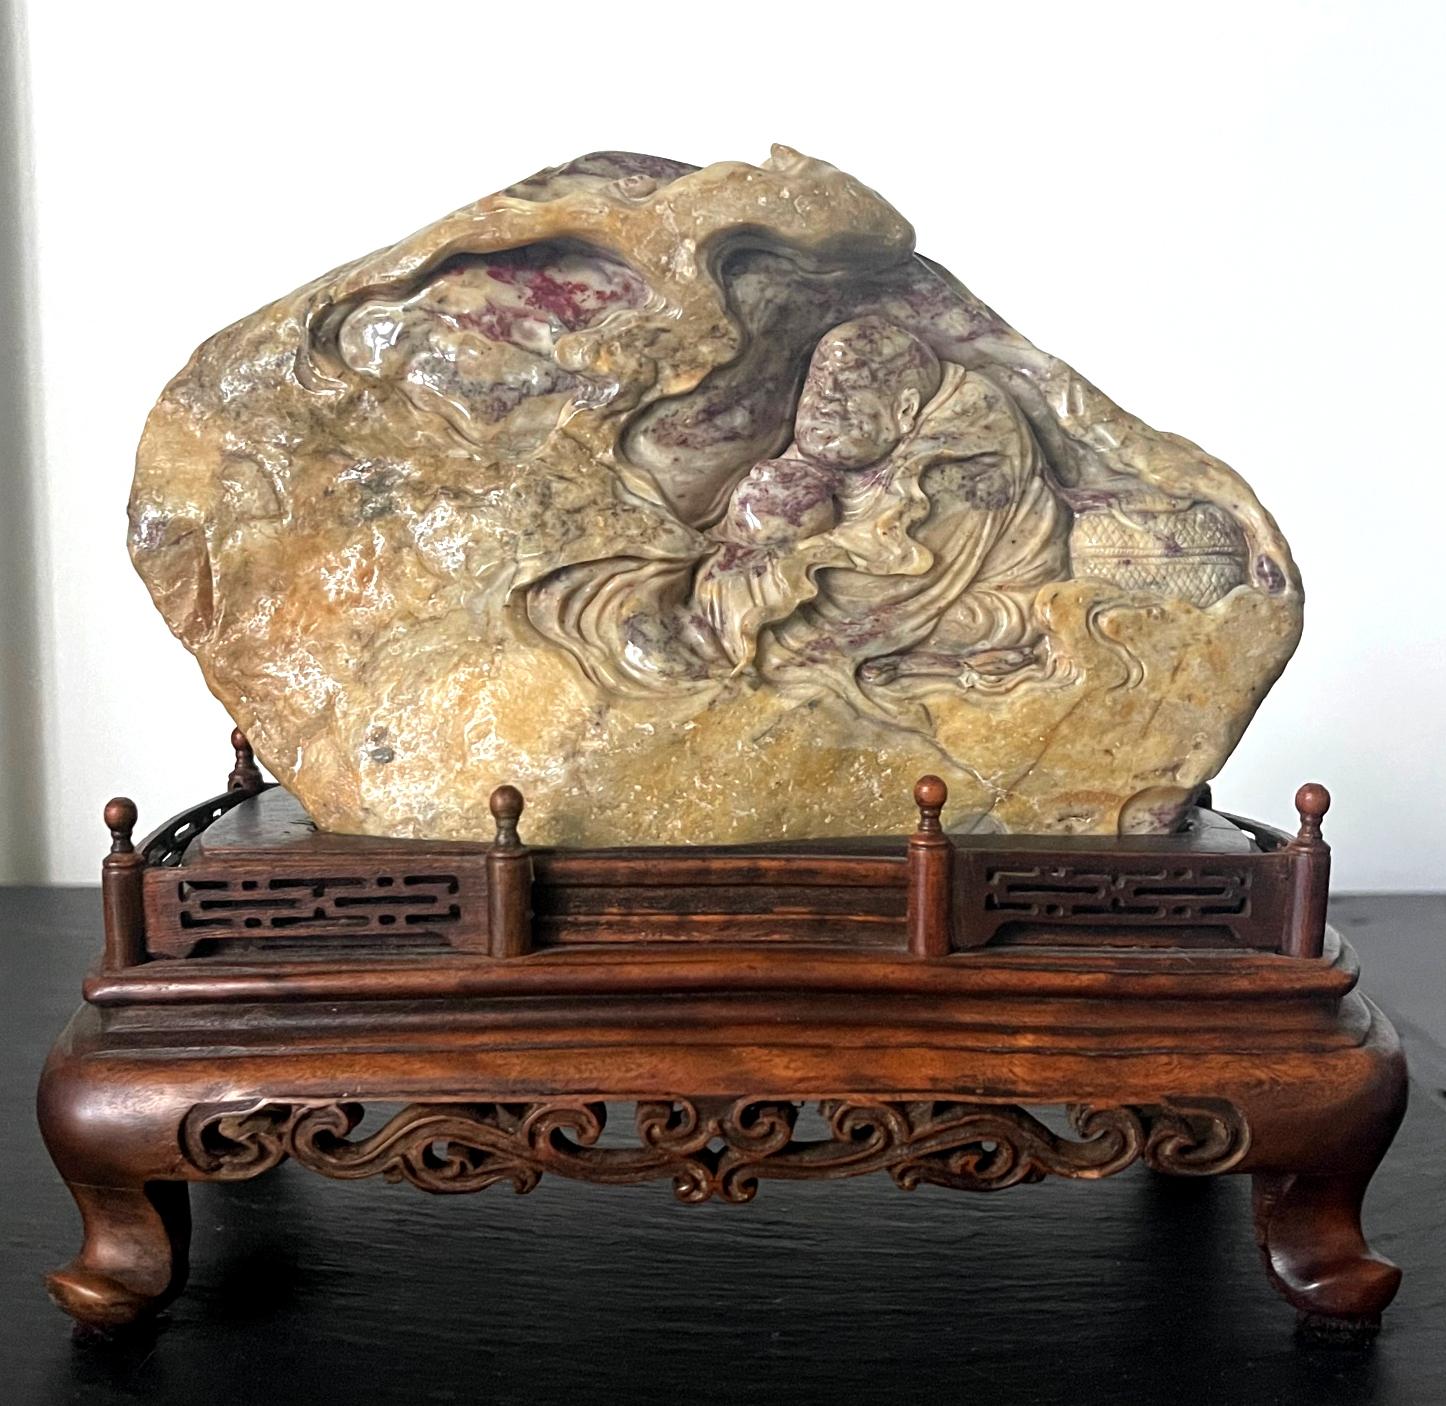 Une petite sculpture en pierre de sang de poulet provenant de Chine vers le début du 20e siècle, peut-être au début (fin de la période Qing ou début de la République). Elle représente un Bodhidharma âgé méditant dans une grotte. La pierre a été